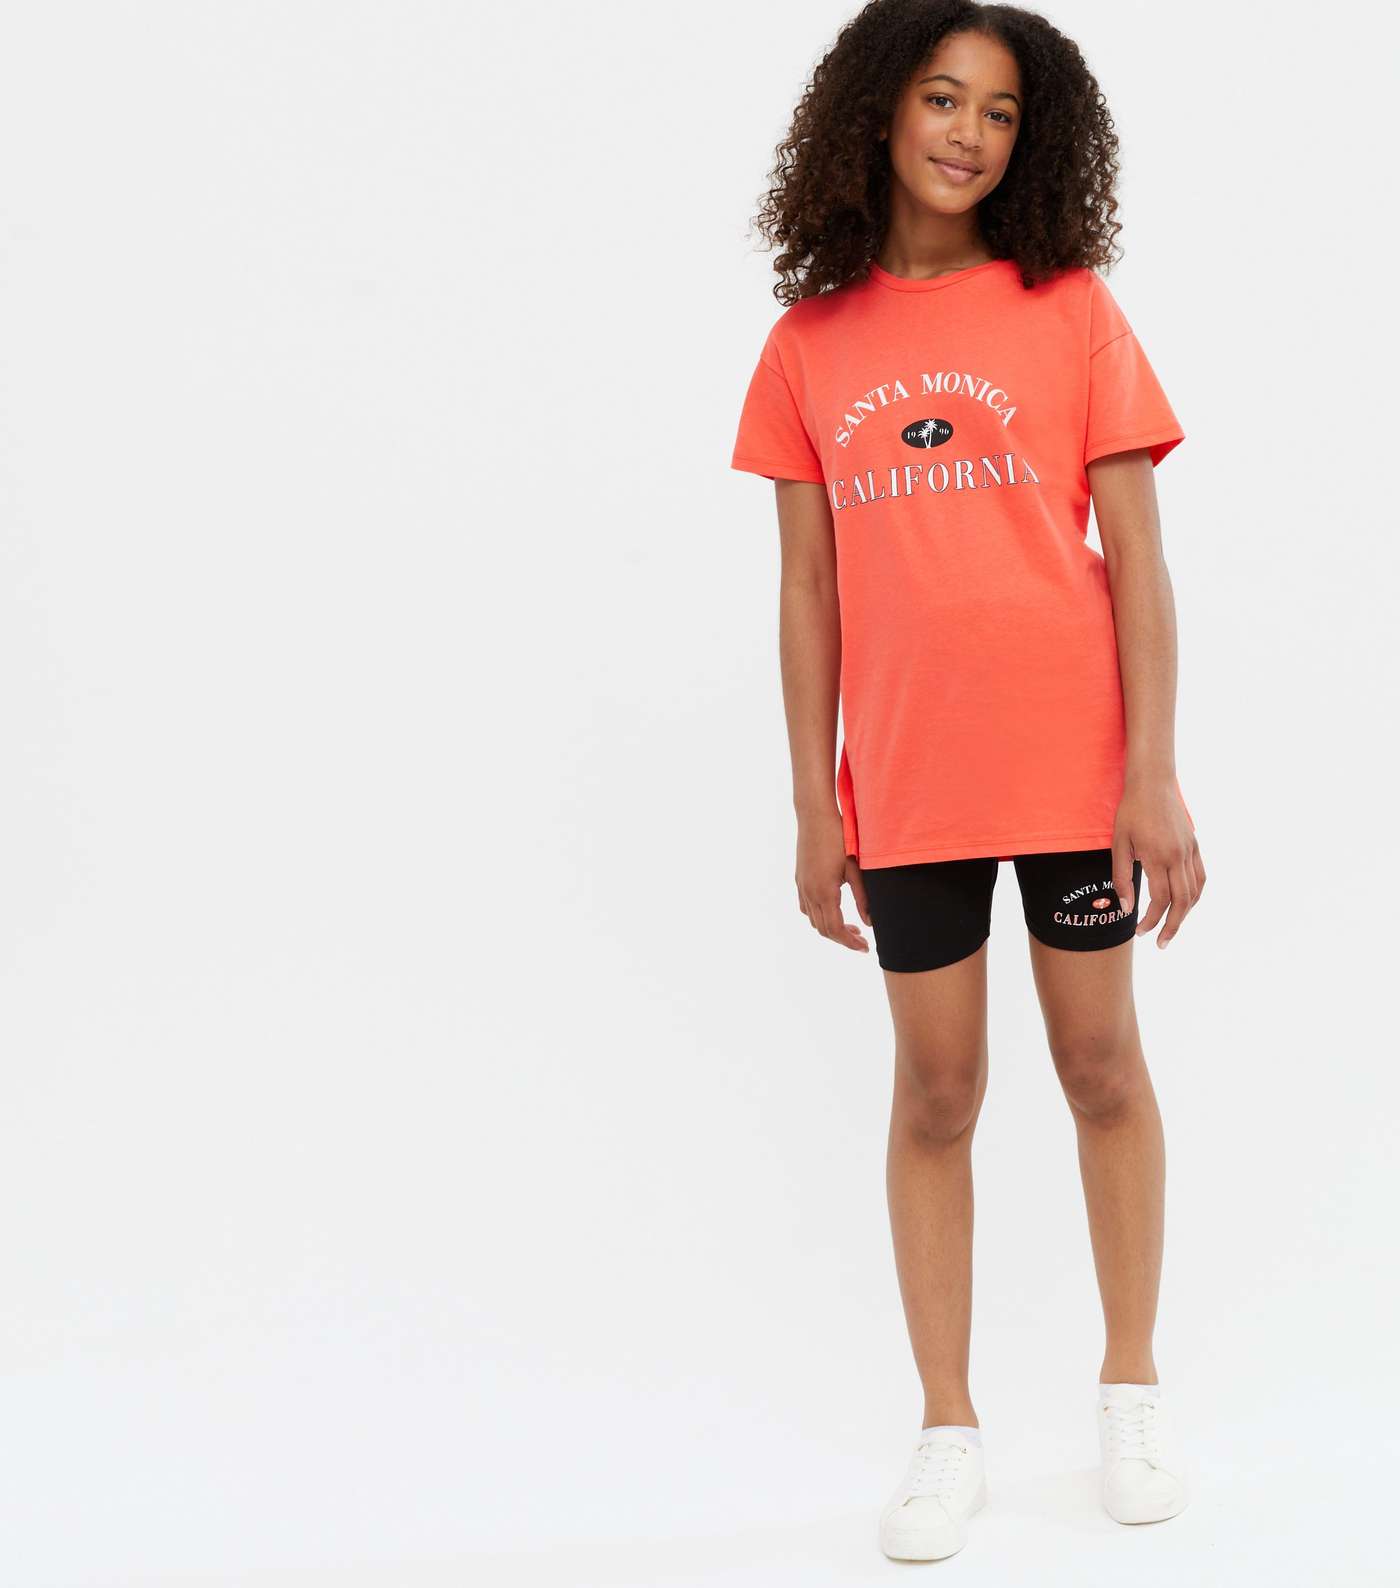 Girls Coral Santa Monica T-Shirt and Shorts Set Image 2